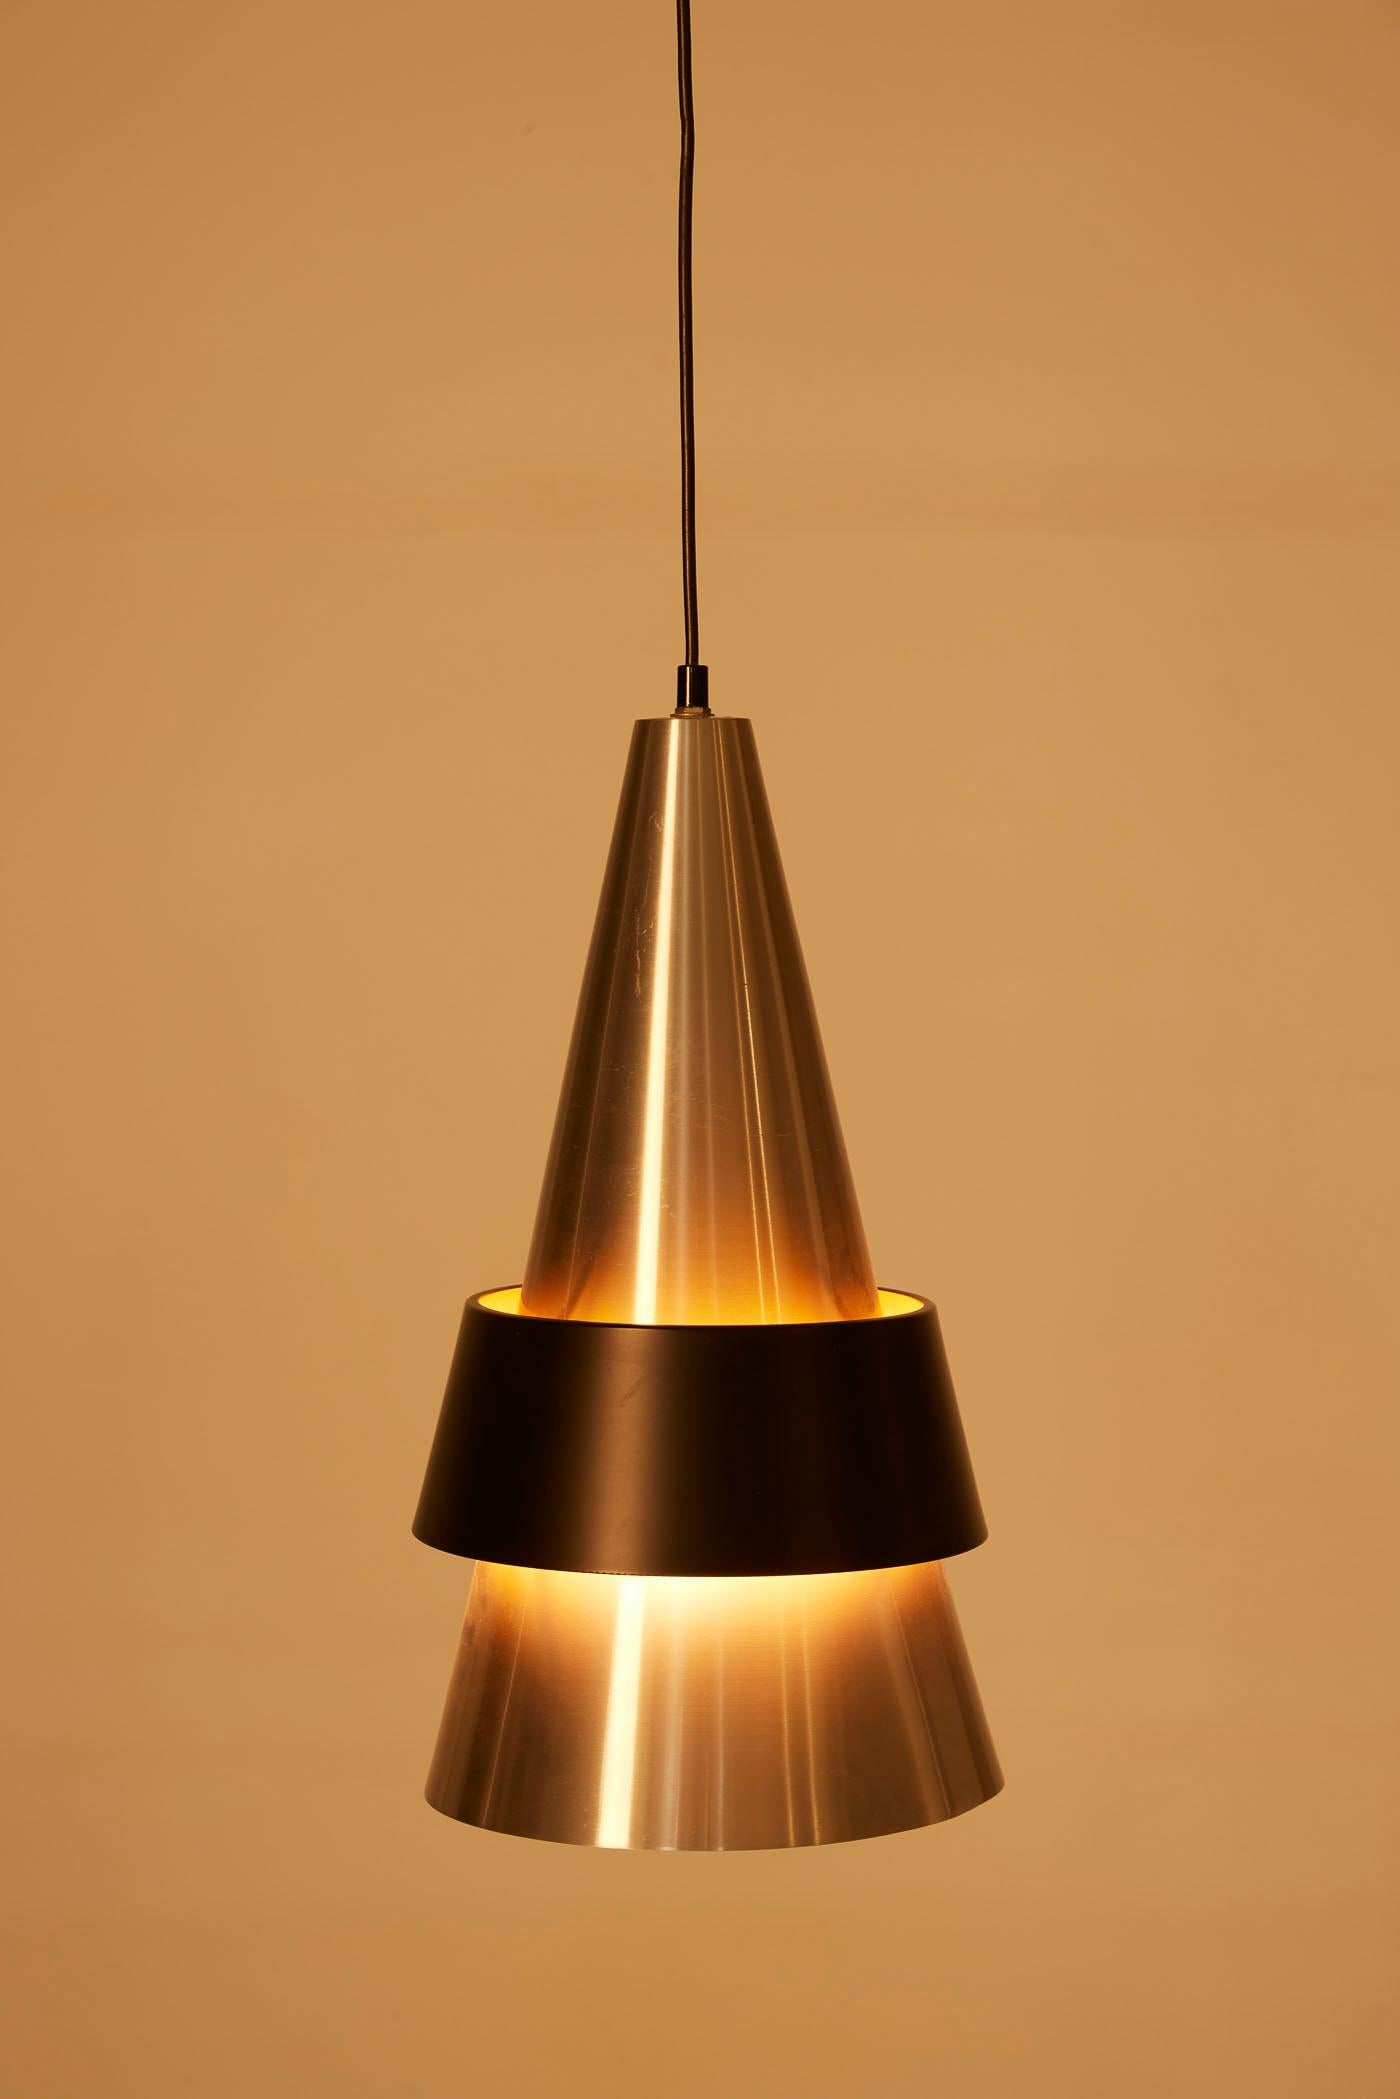 Suspension Corona du designer danois Jo Hammerborg pour Fog & Mørup, datant des années 1960. Le réflecteur conique est en métal brossé avec un anneau en métal laqué noir. Très bon état.
DV429